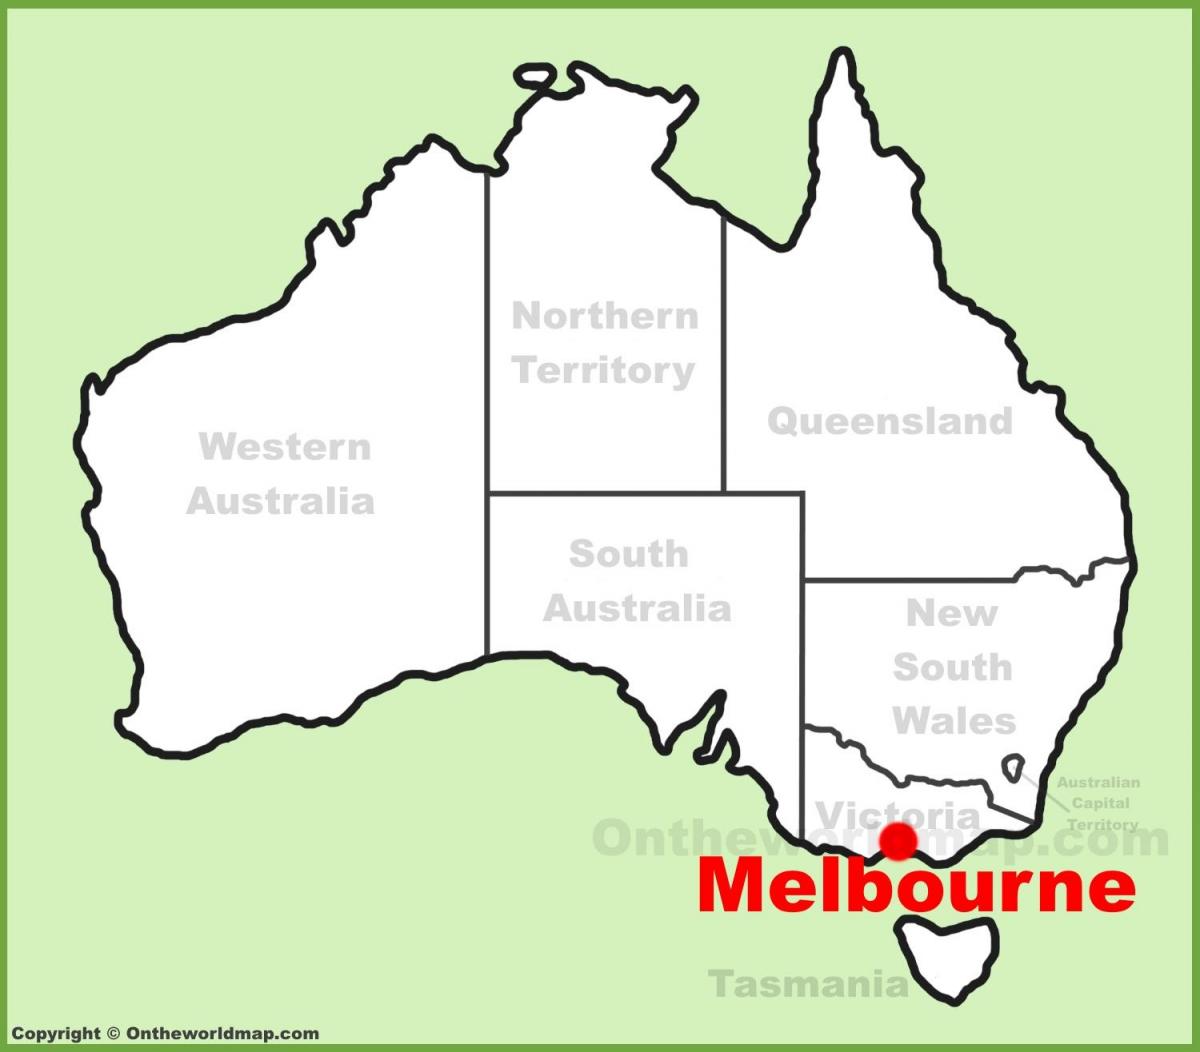 خريطة أستراليا ملبورن